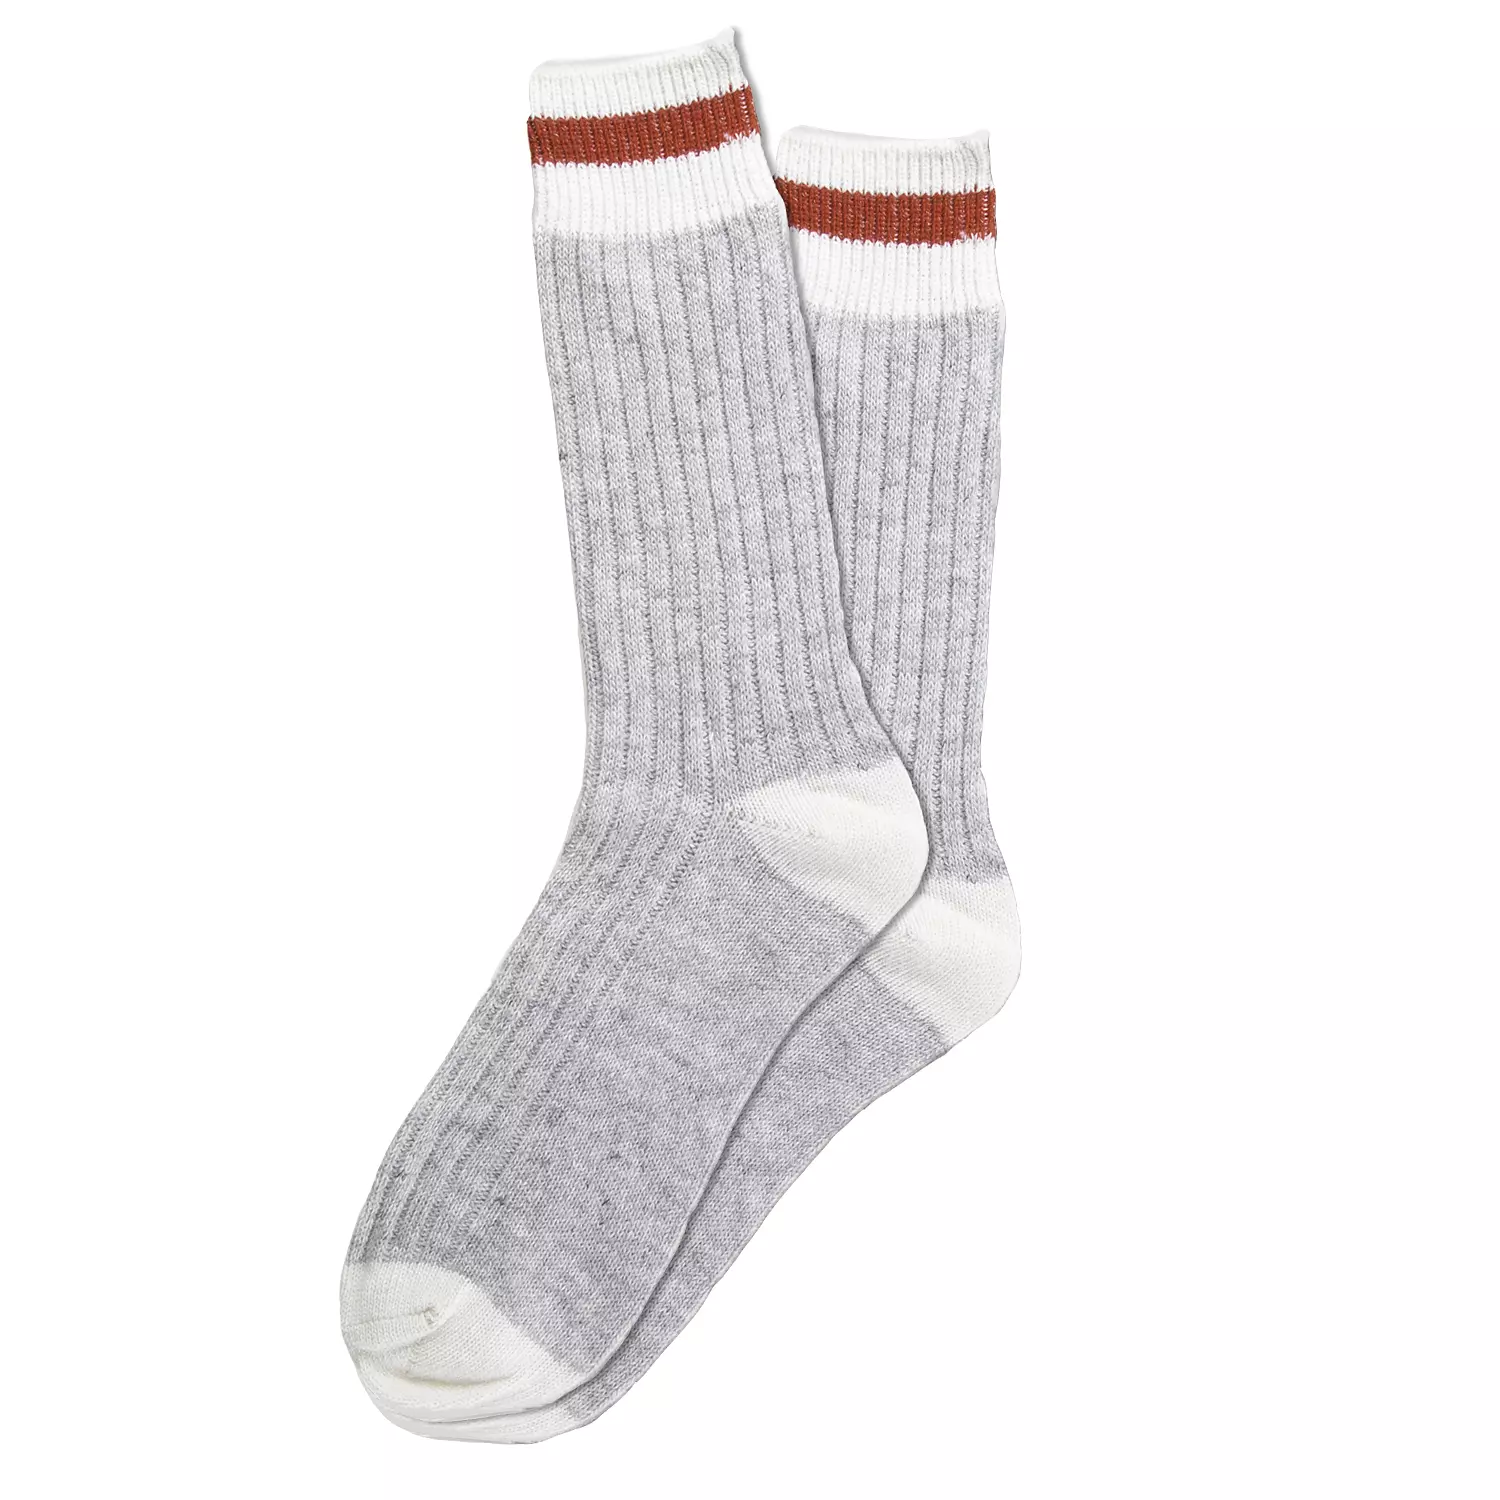 CRAFTSMAN Men's Work Socks - Wool Blend - Grey - Sizes 10-13 - 3 Pairs